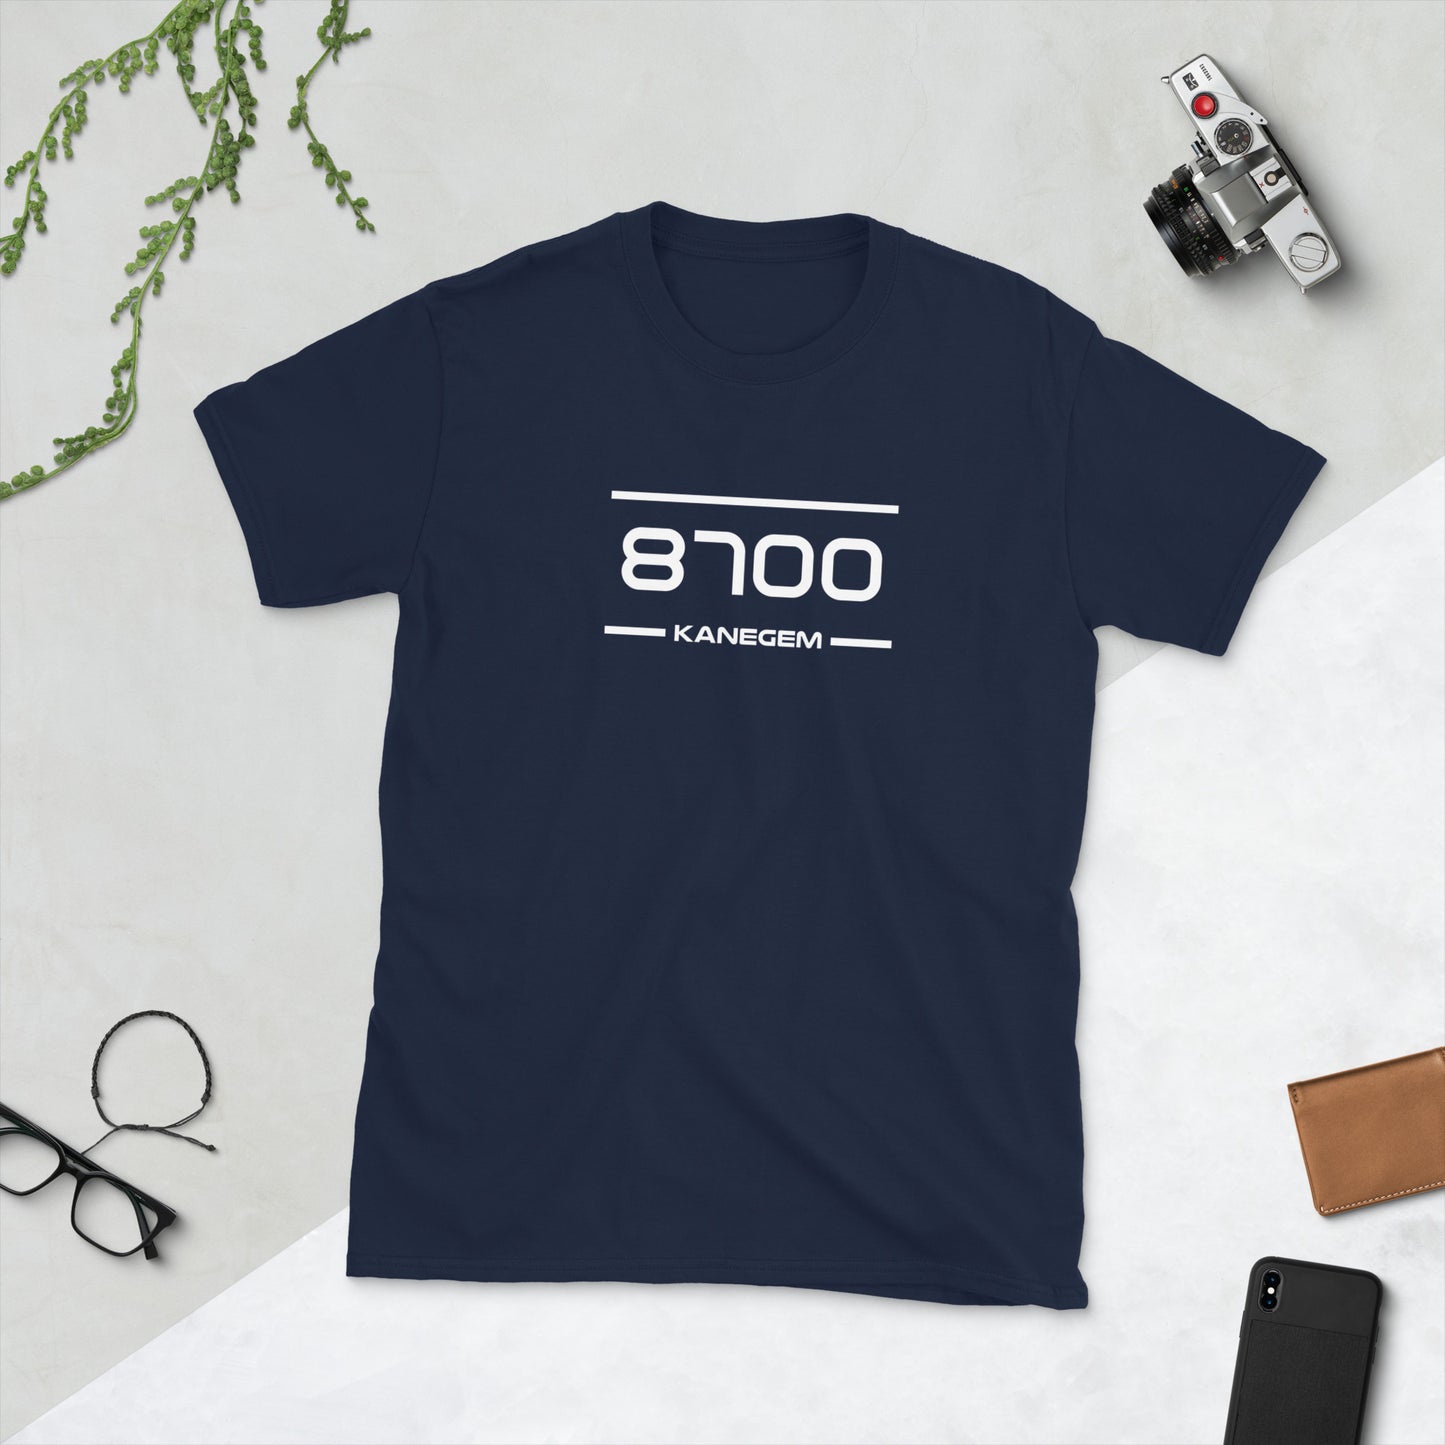 Tshirt - 8700 - Kanegem